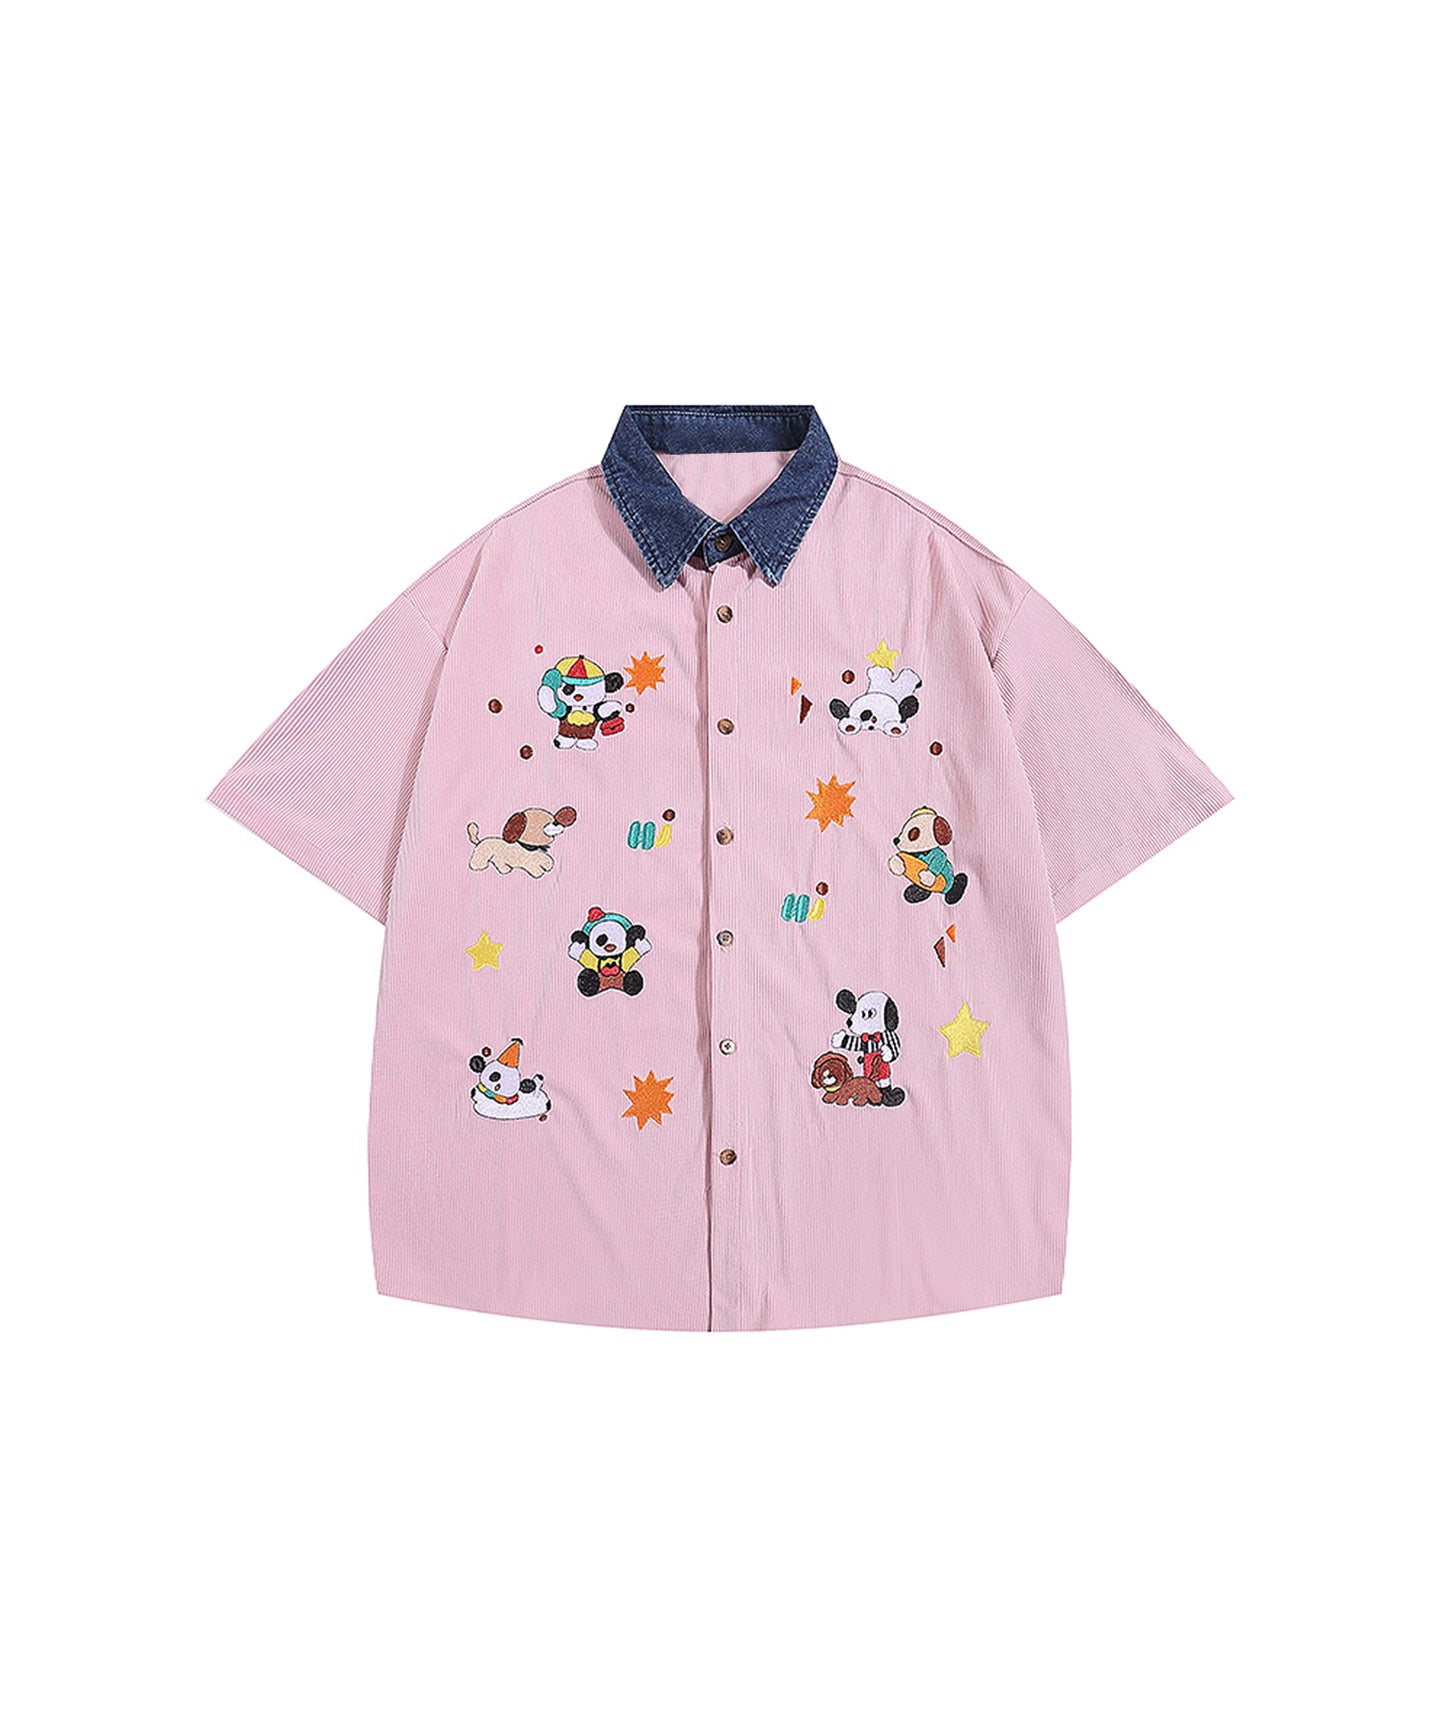 【HOOK -select- 】レトロ調キャラ刺繍夏コーデュロイ半袖シャツ